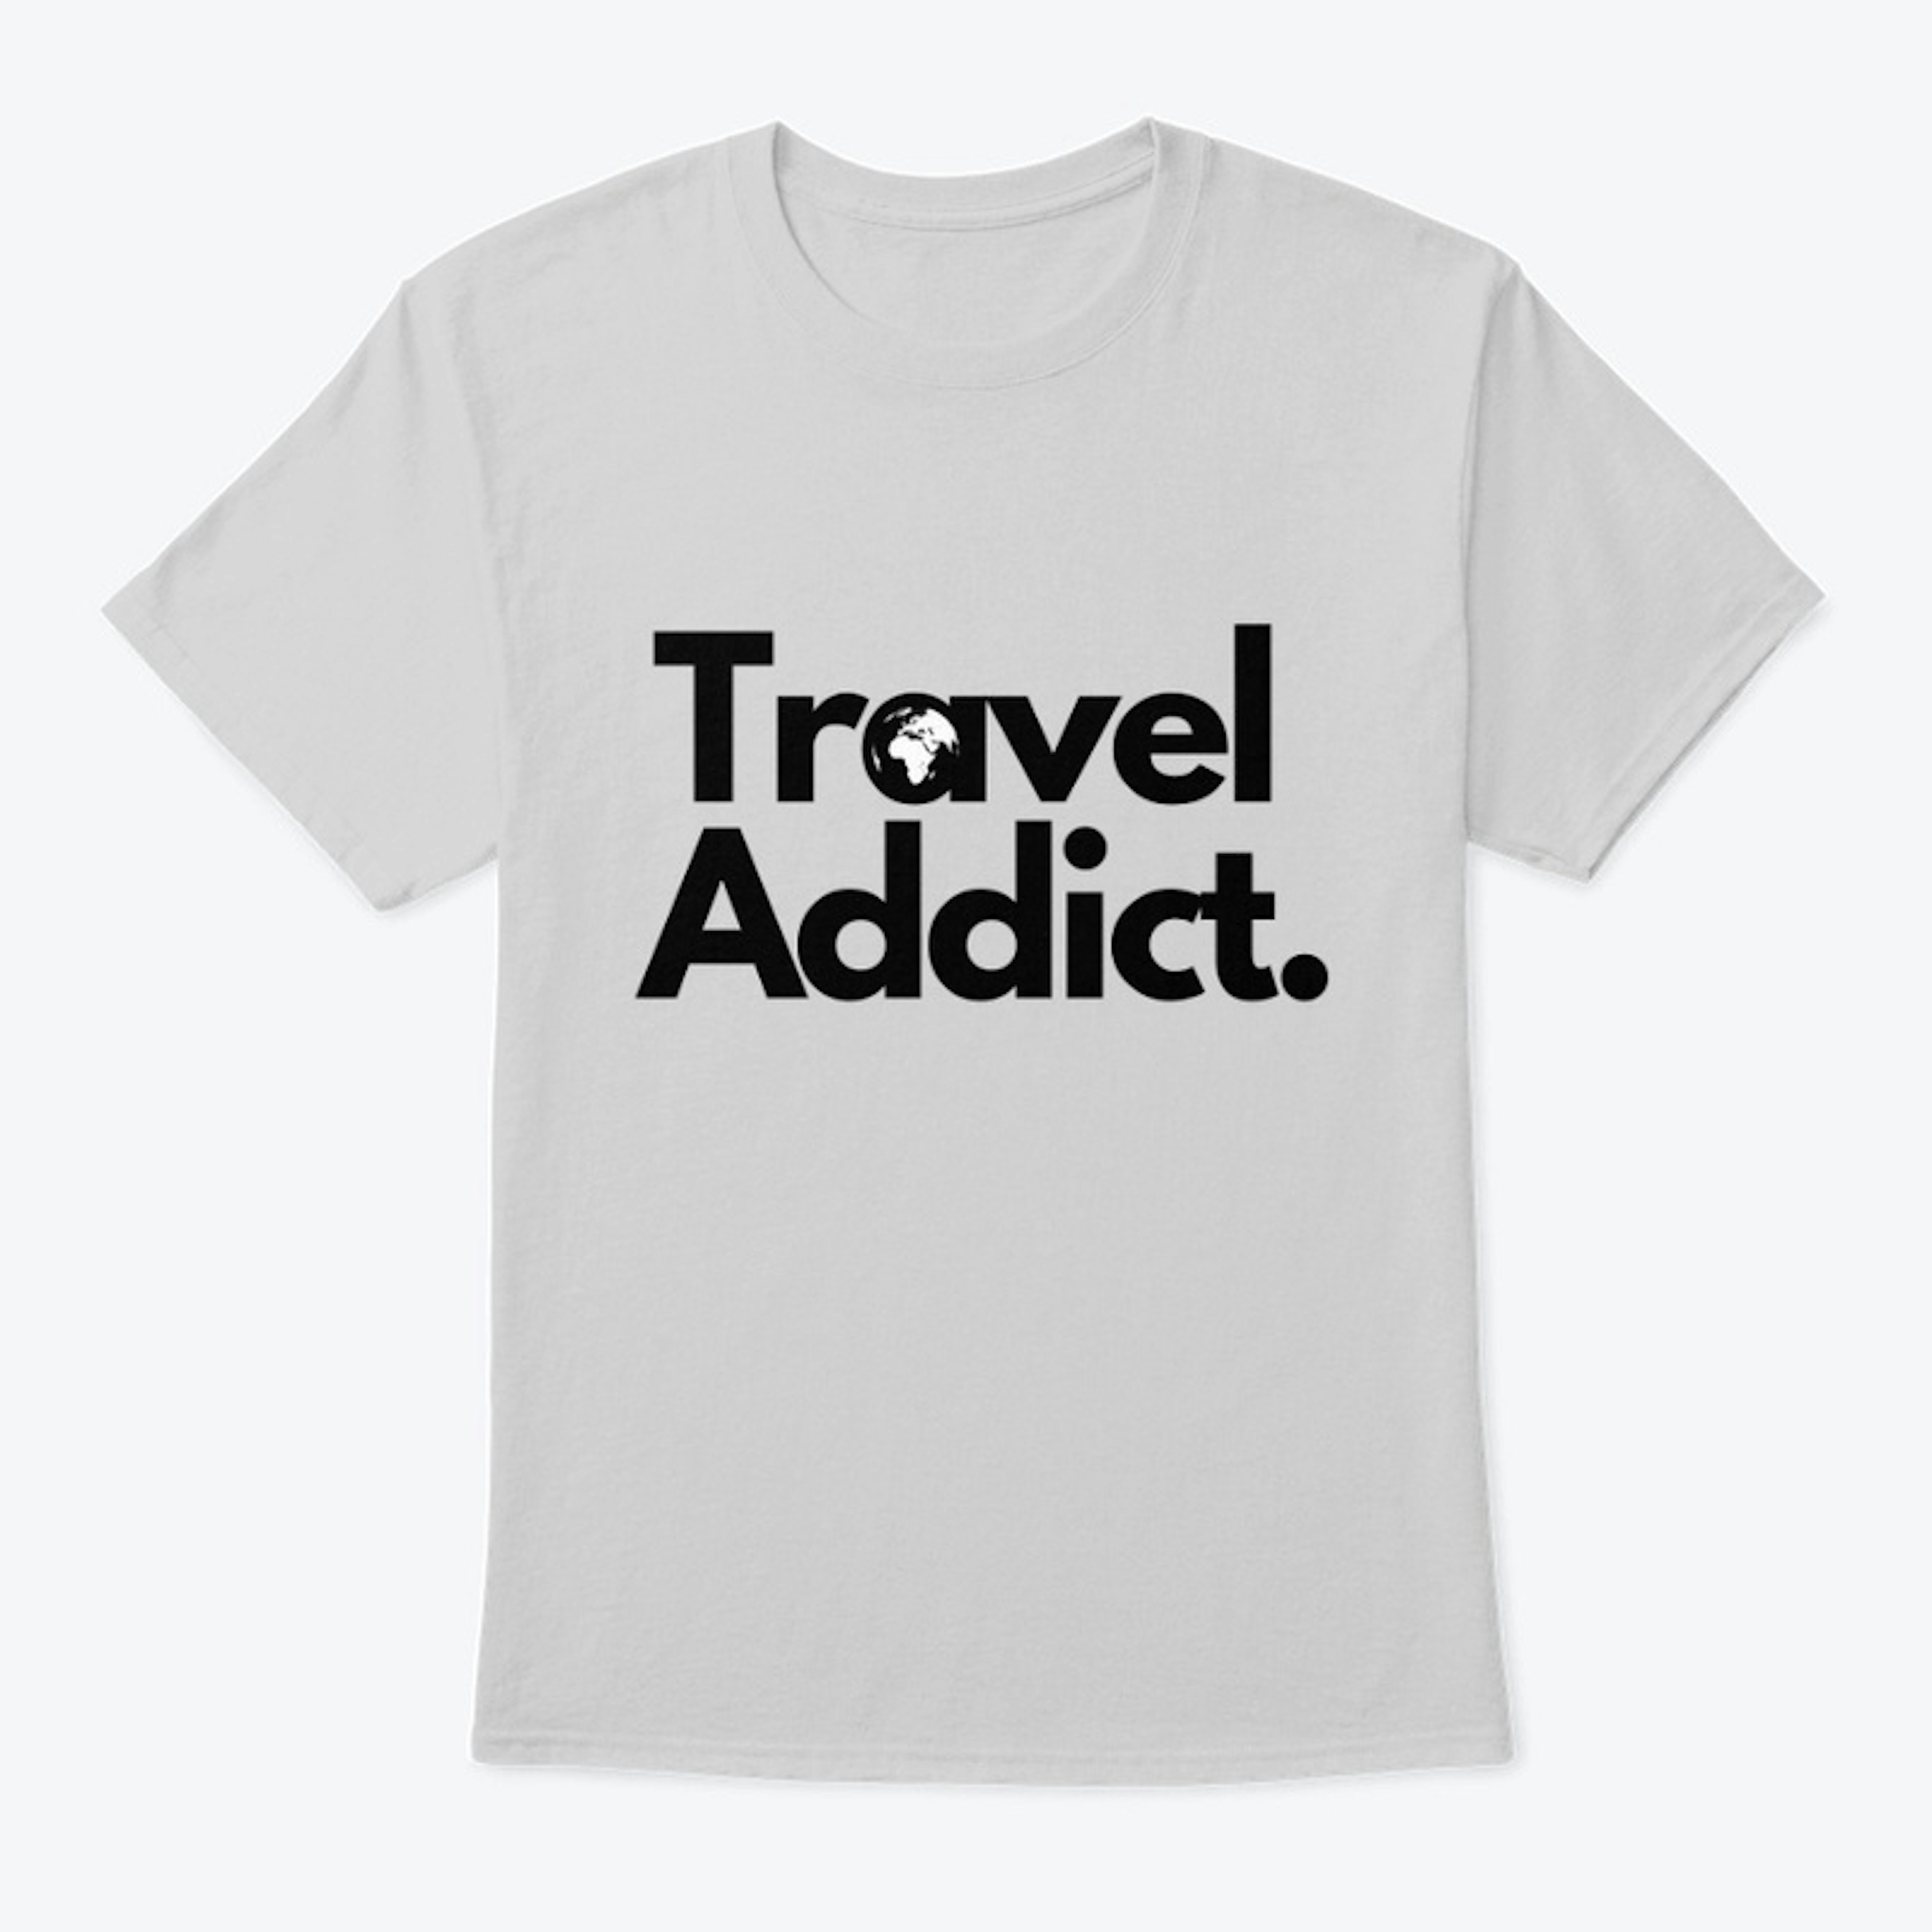 Travel Addict. Essential t-shirt 